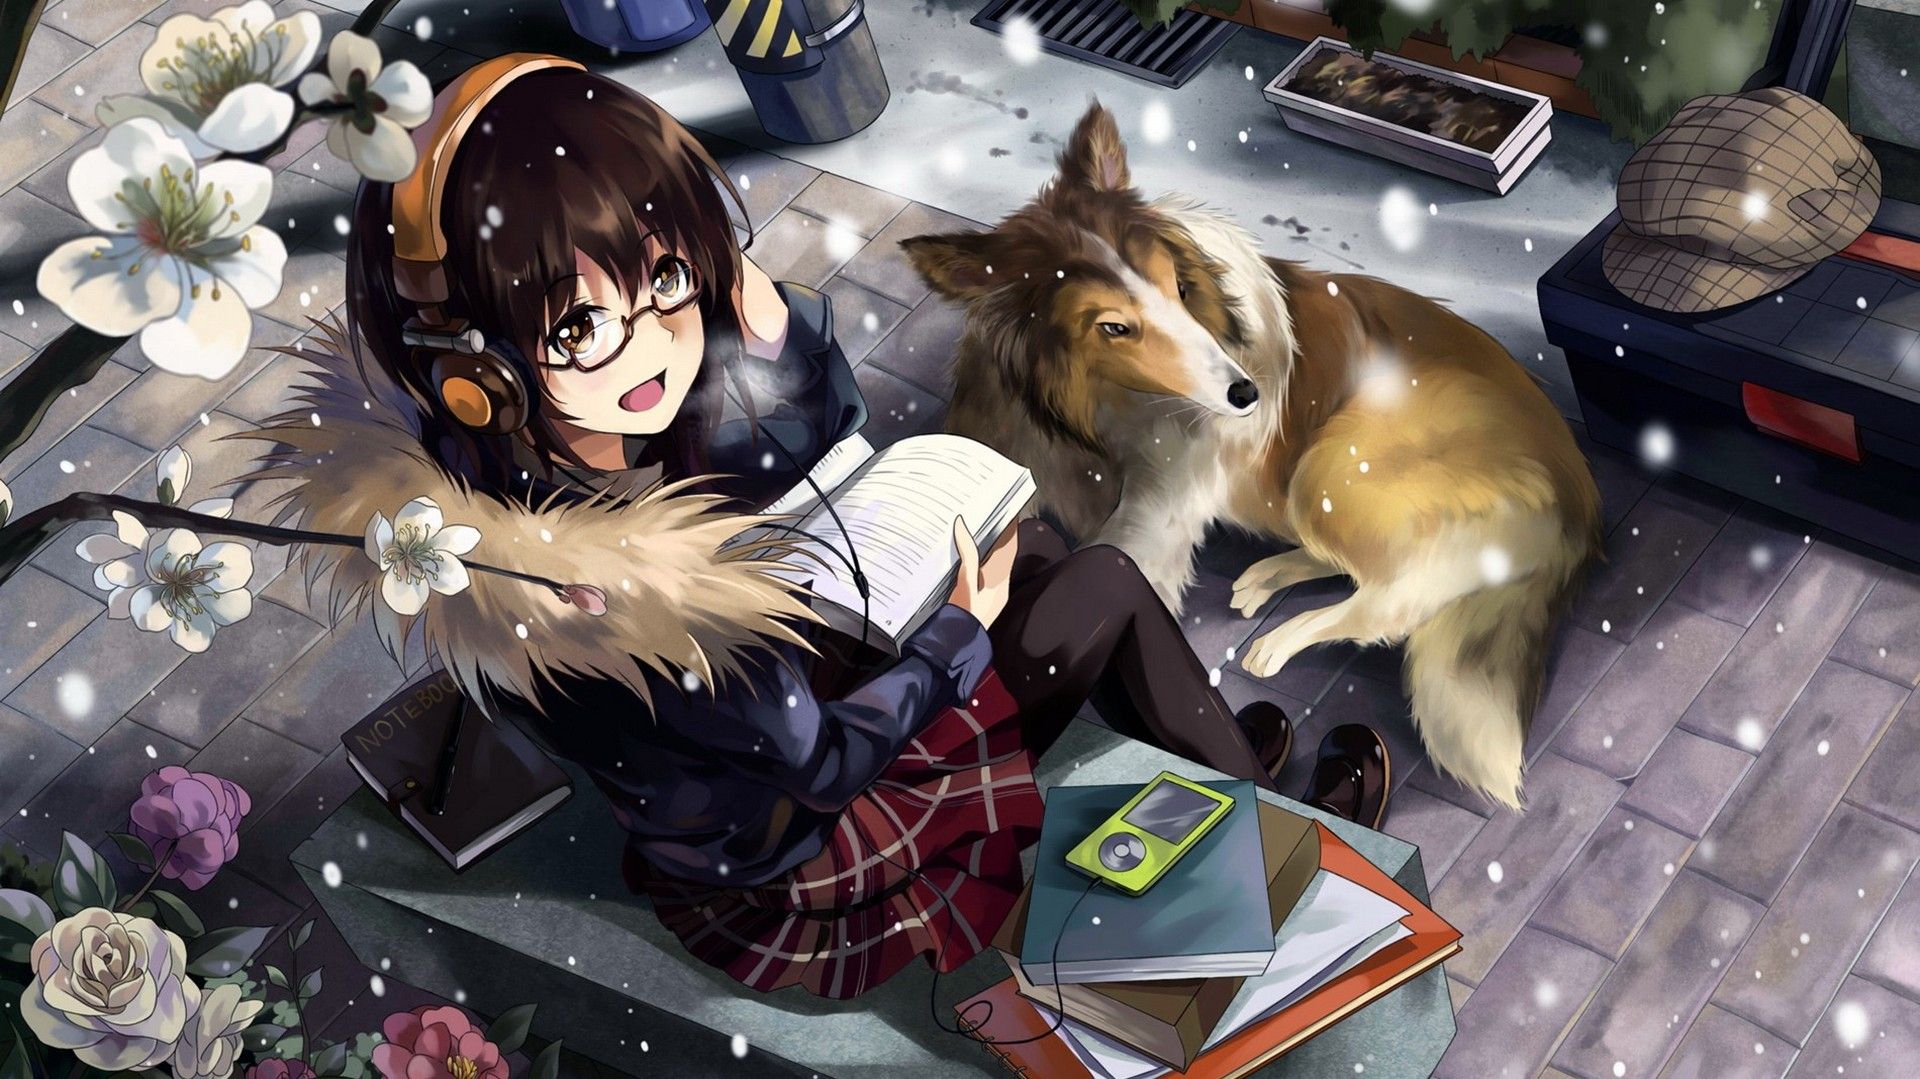 headphones, snow, flowers, dogs, skirts, books, anime, anime girls wallpaper